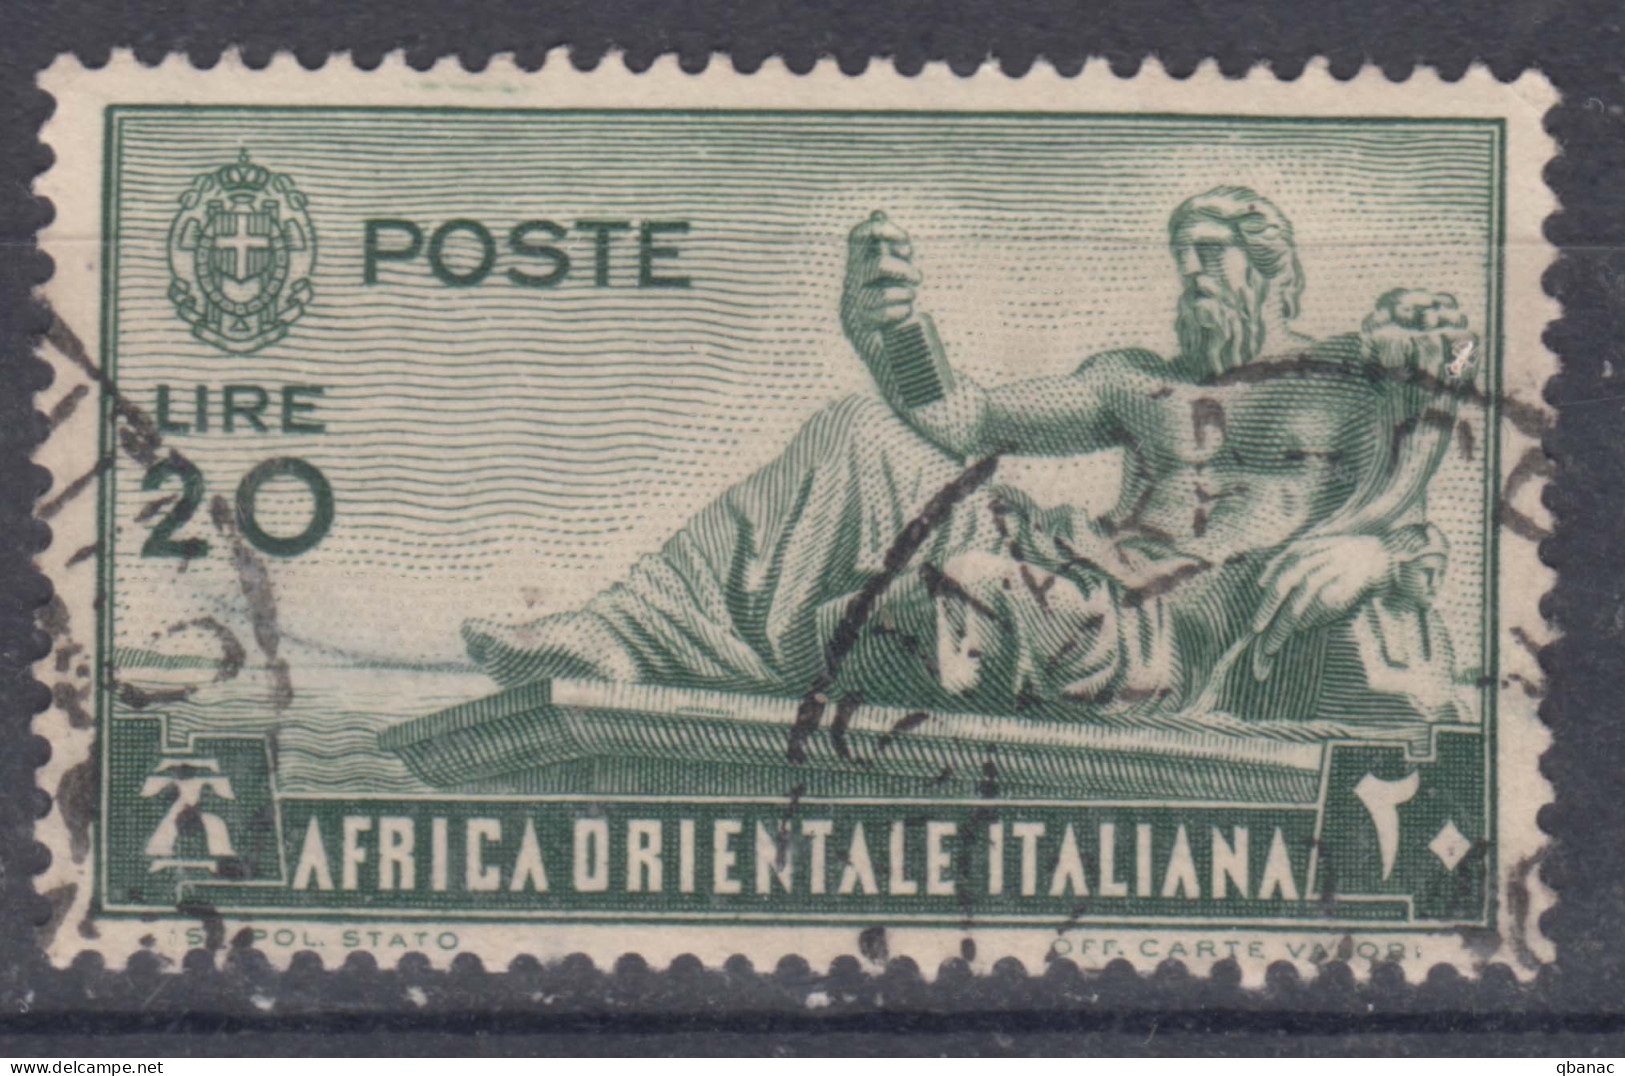 Italy Colonies East Africa 1938 Sassone#20 Used - Africa Oriental Italiana